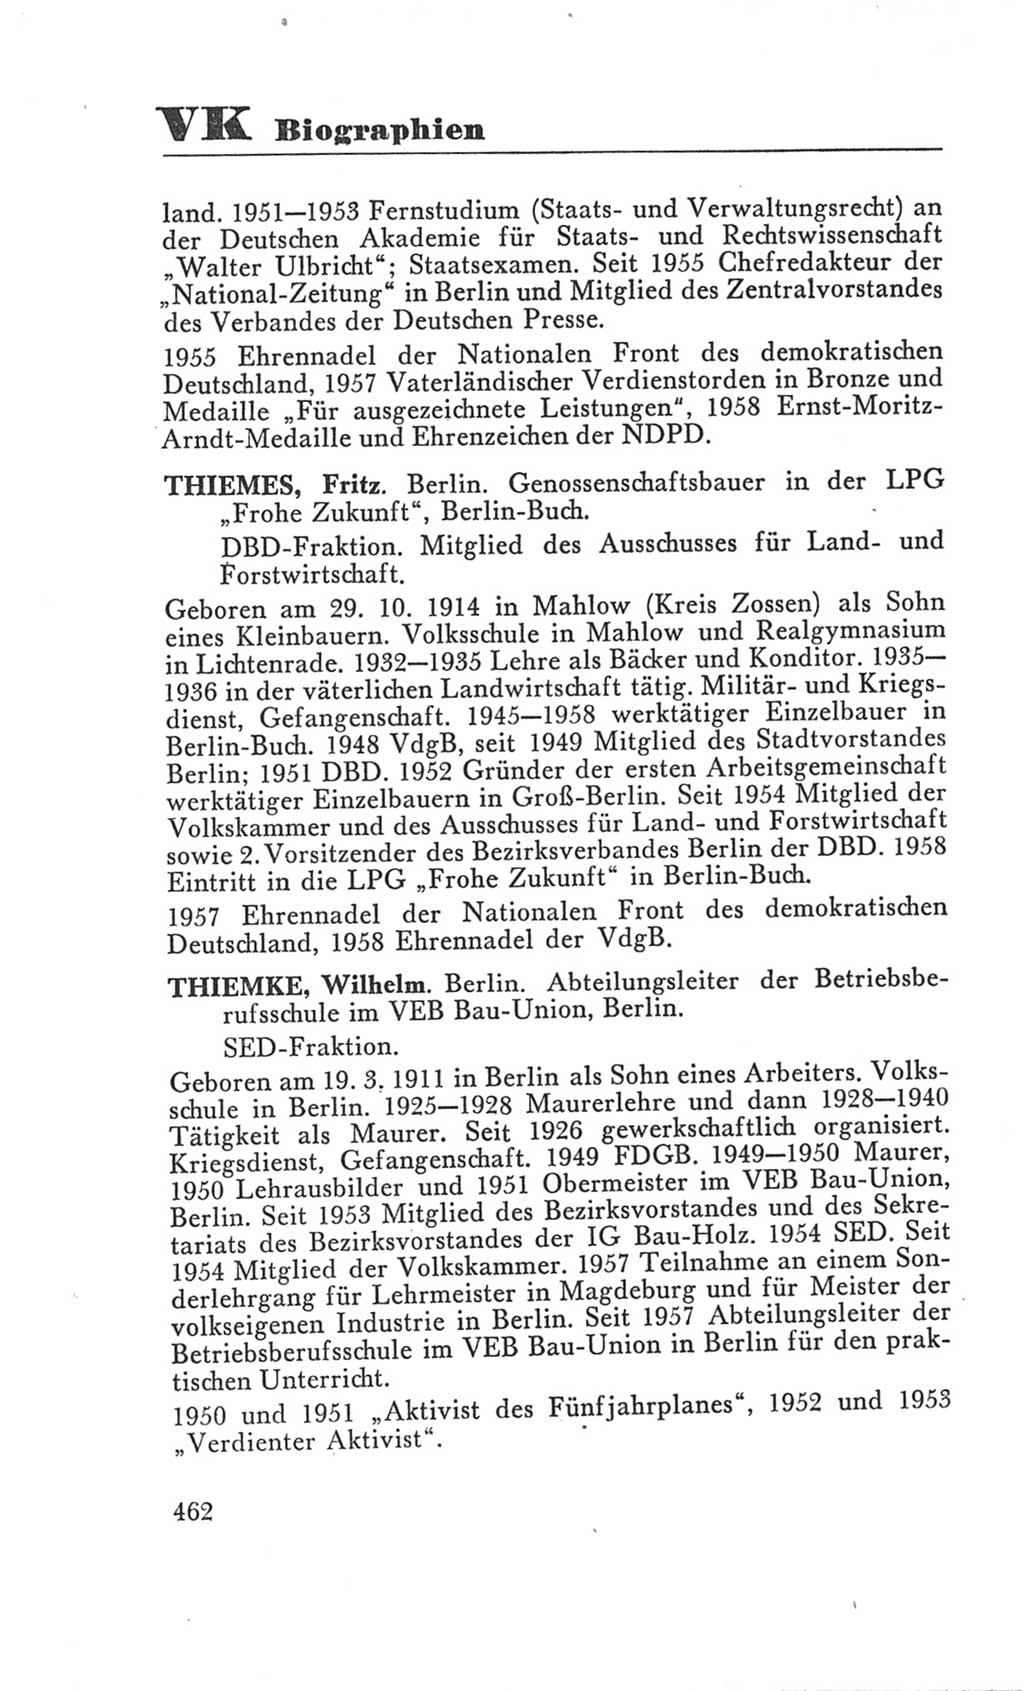 Handbuch der Volkskammer (VK) der Deutschen Demokratischen Republik (DDR), 3. Wahlperiode 1958-1963, Seite 462 (Hdb. VK. DDR 3. WP. 1958-1963, S. 462)